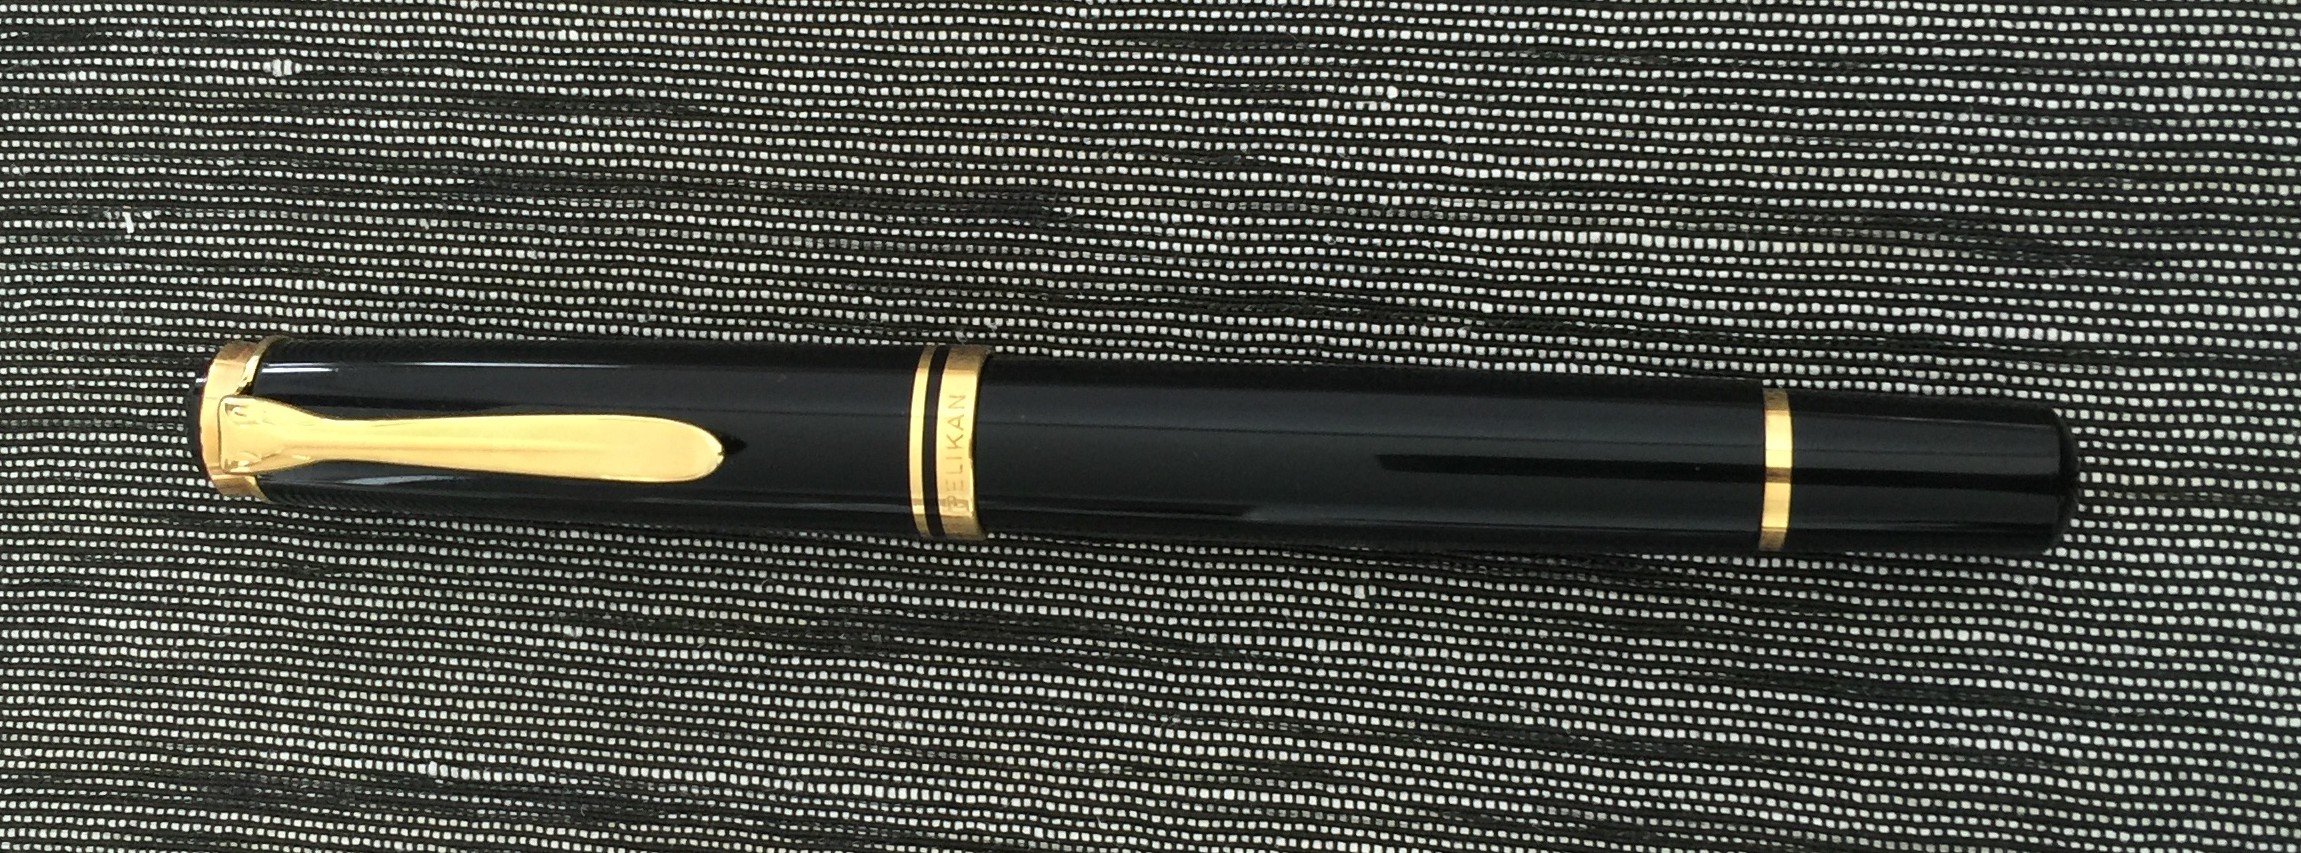 Pelikan M600 Fountain Pen